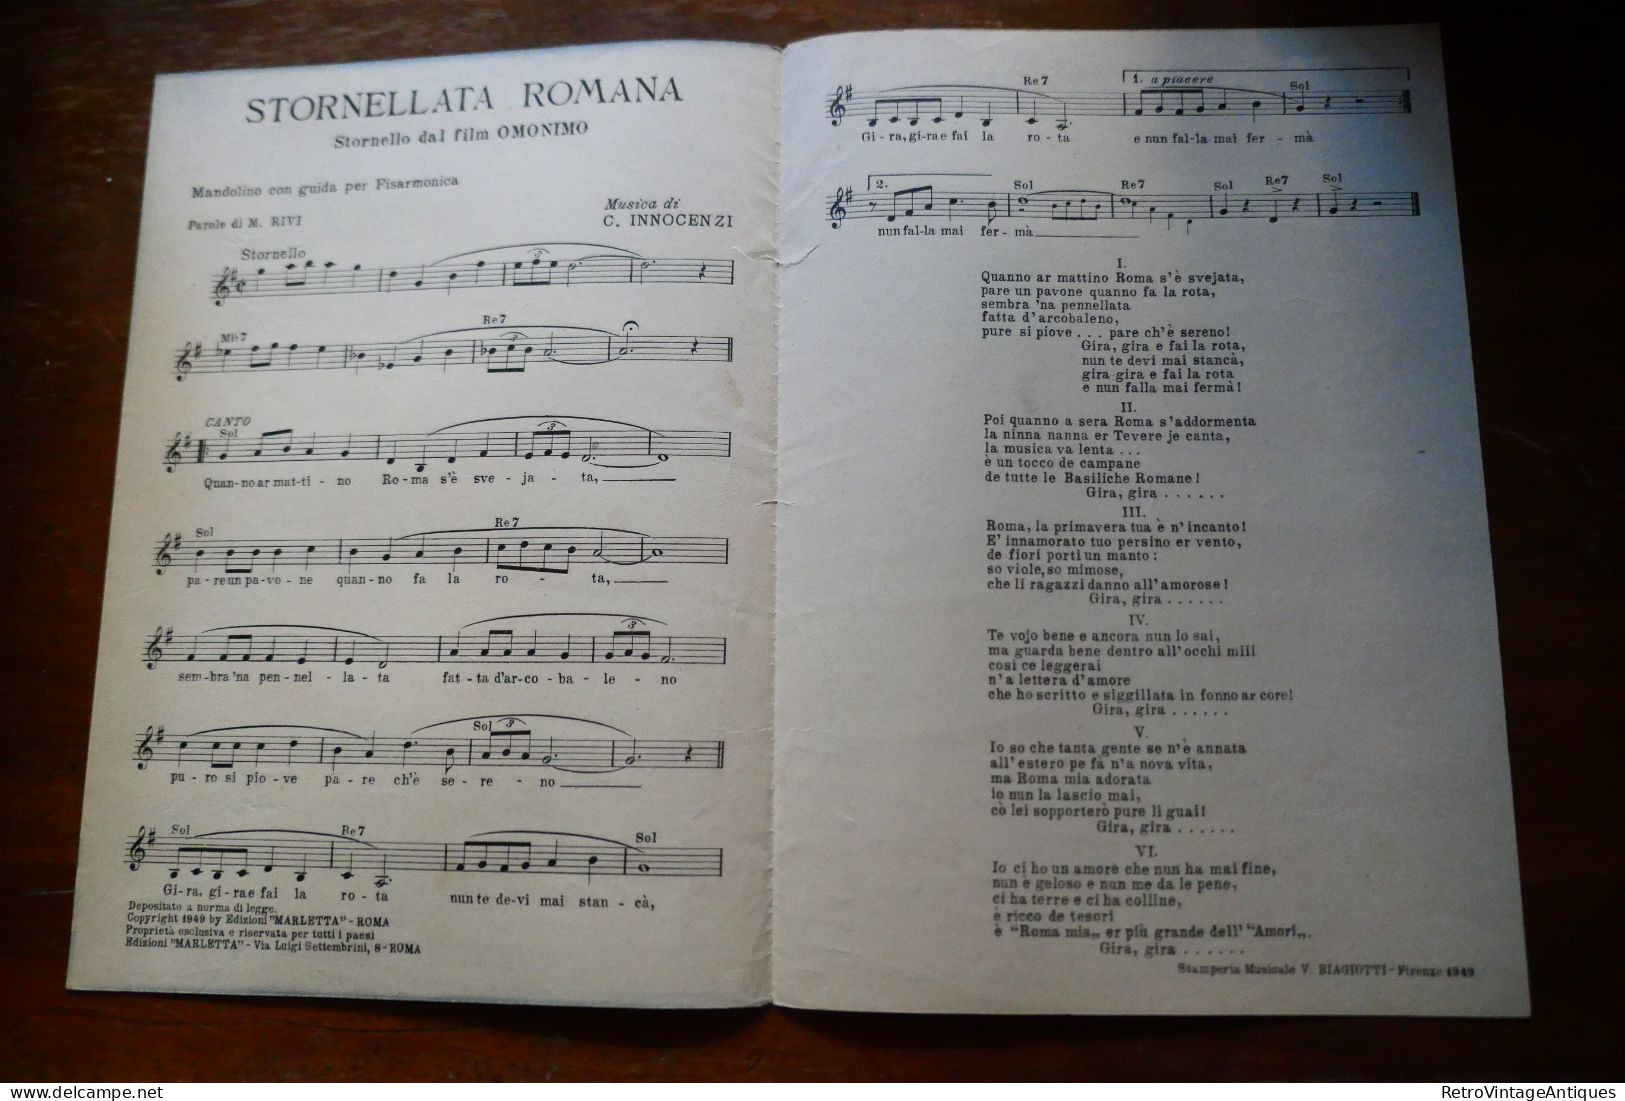 Stornellata Romana Giorgio Graziosi Marcella Rivi Carlo Innocenzi Marletta Partitura Muzicala Veche Romania - Vocals